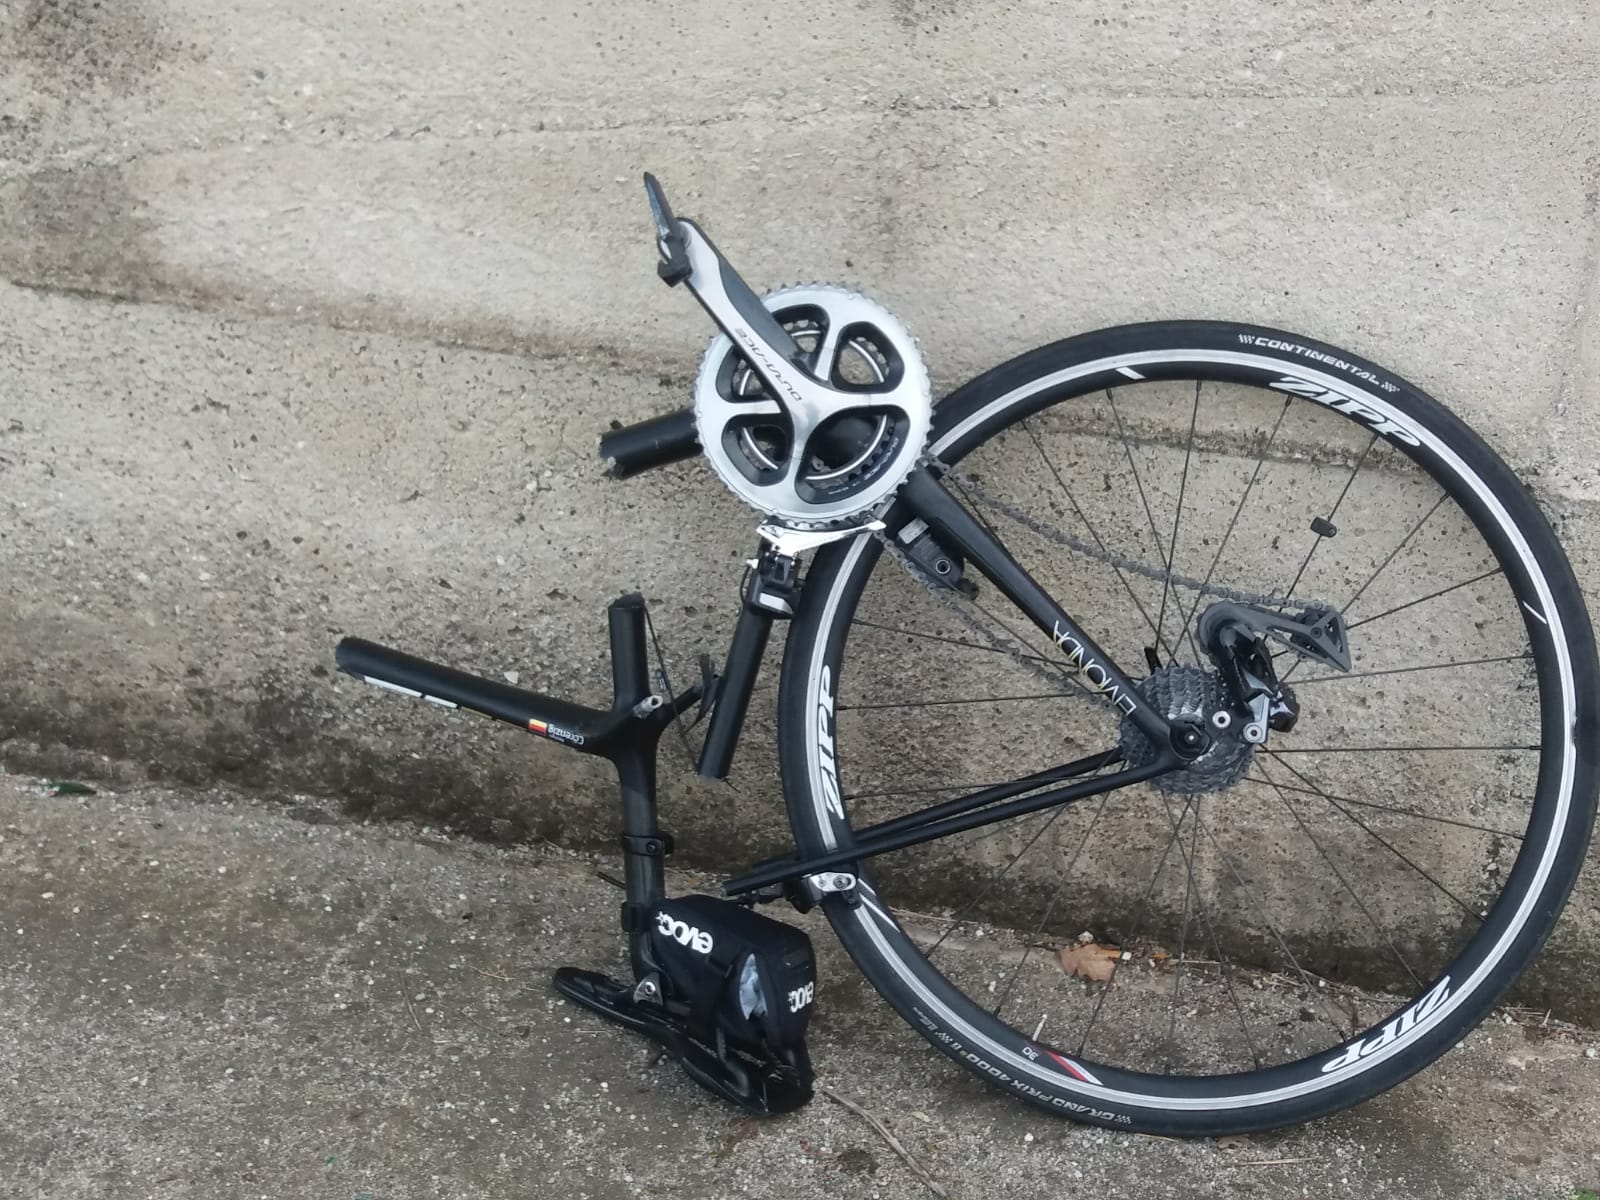 incidente davoli bicicletta con un morto caduto burrone